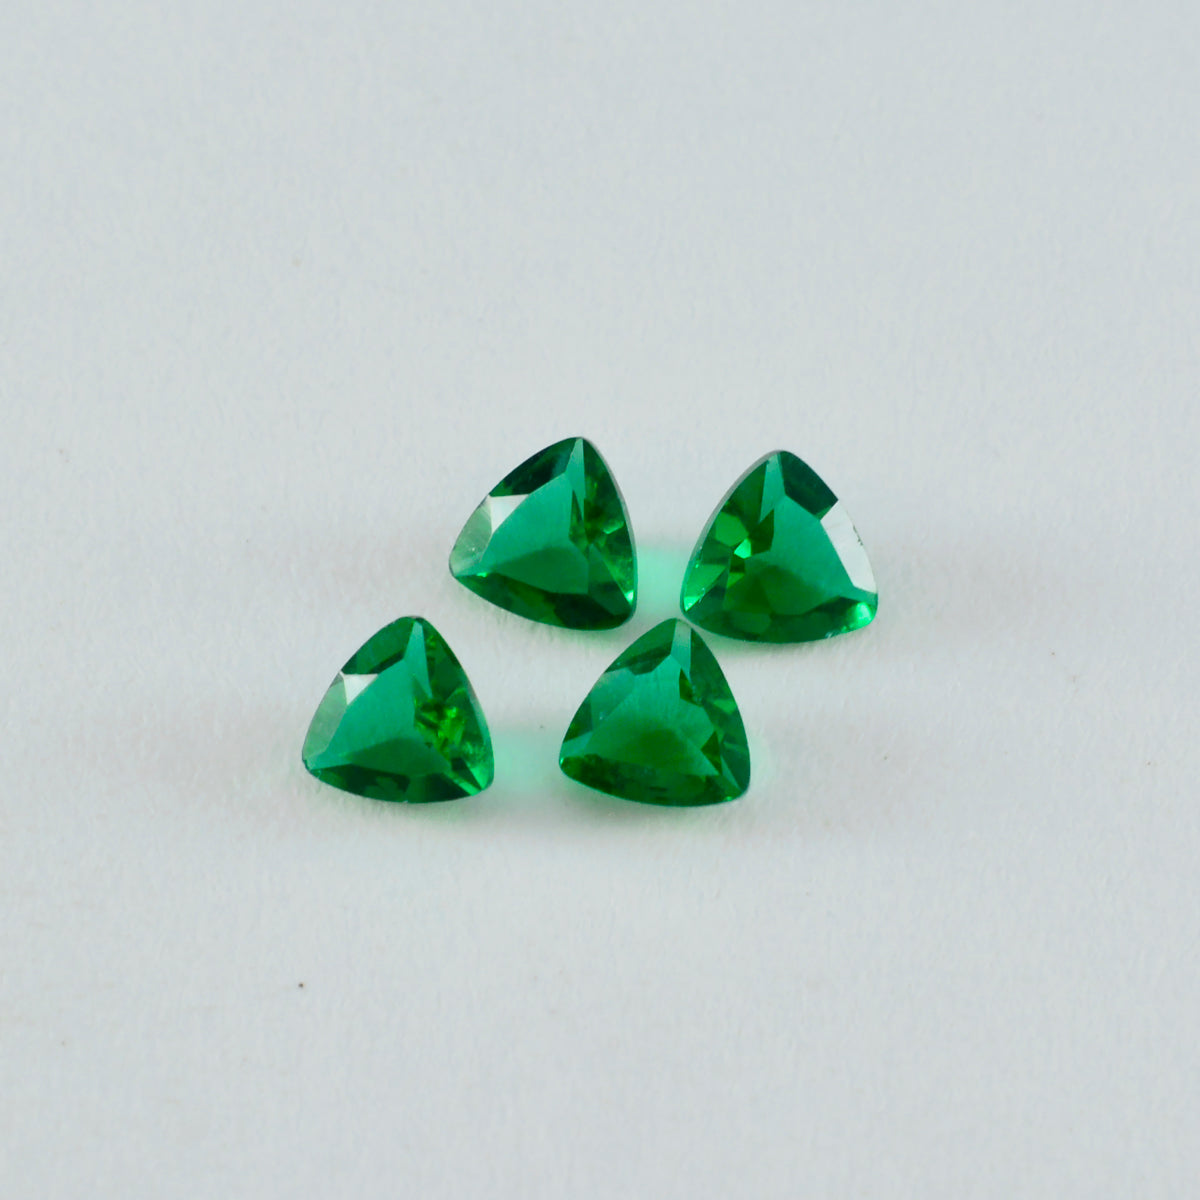 Riyogems 1 Stück grüner Smaragd, CZ, facettiert, 8 x 8 mm, Billionenform, erstaunliche Qualität, lose Edelsteine